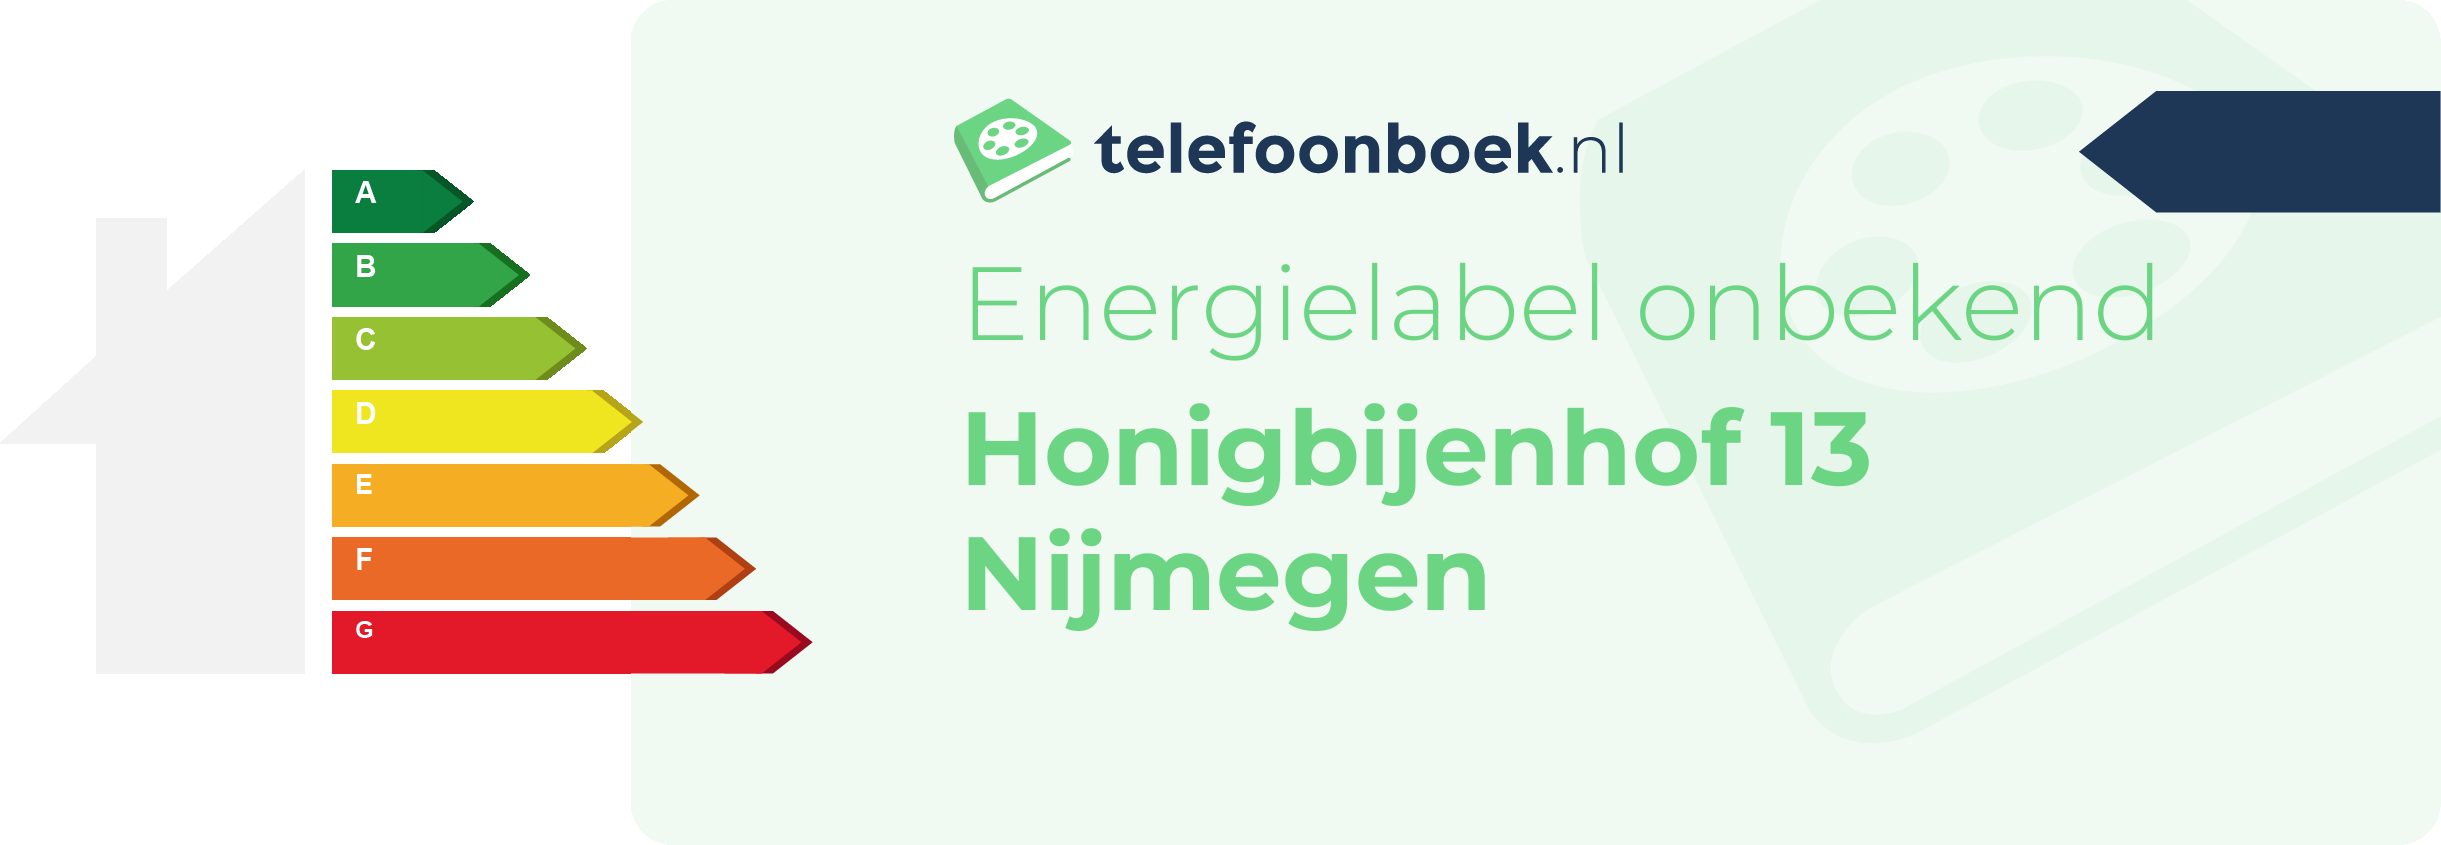 Energielabel Honigbijenhof 13 Nijmegen